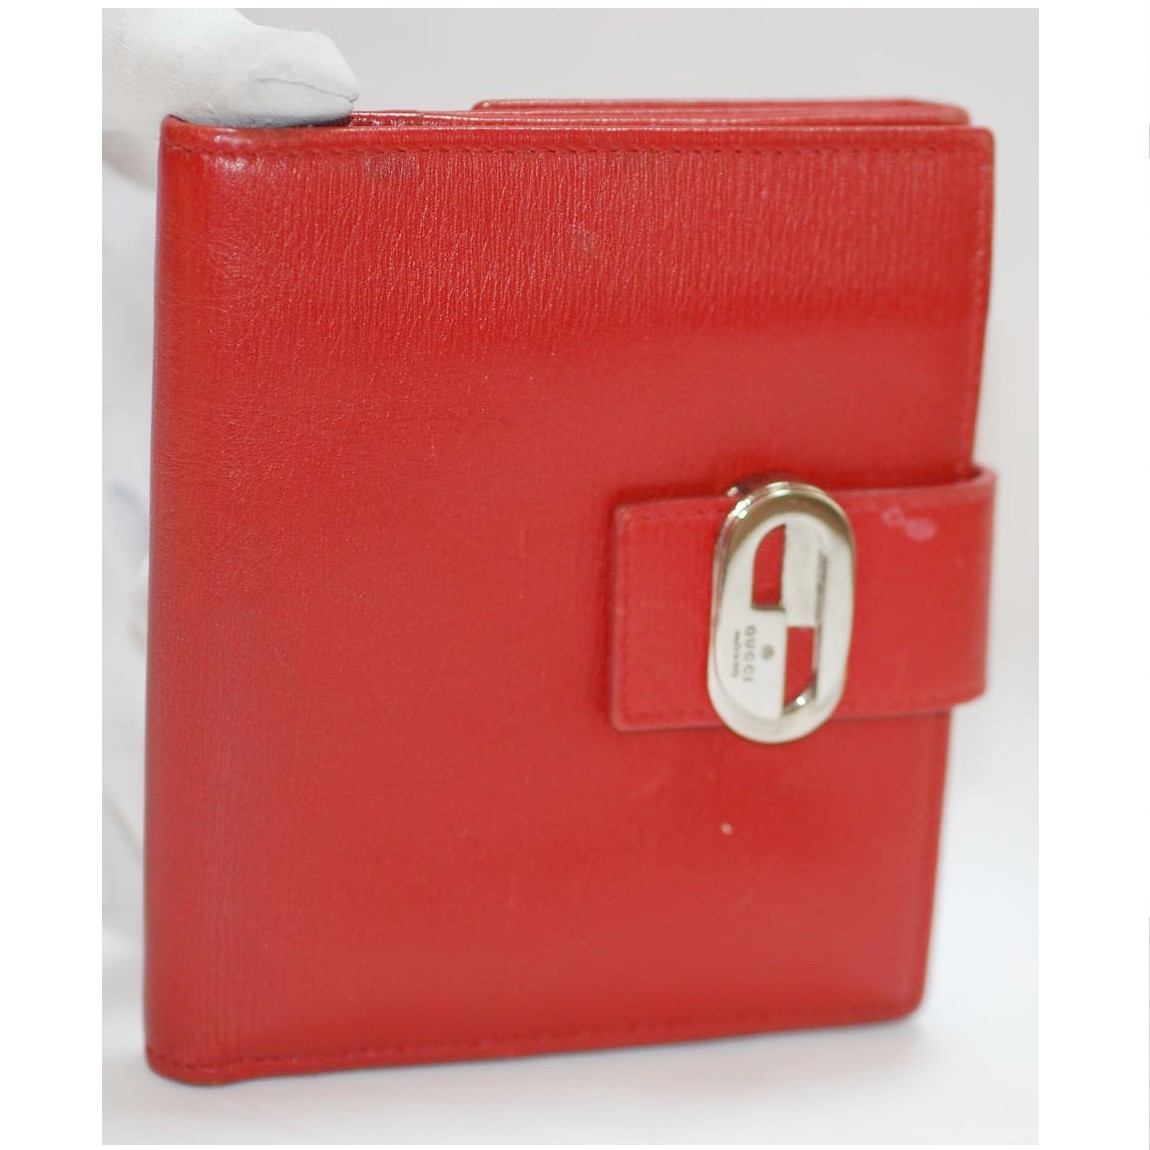 中古 高額売筋 本物美品グッチの女性用赤いカーフ素材のWホックの財布 銀色Gマークメタルトップ付 在庫一掃 5D2cm ○C16-14 サイズW12H10